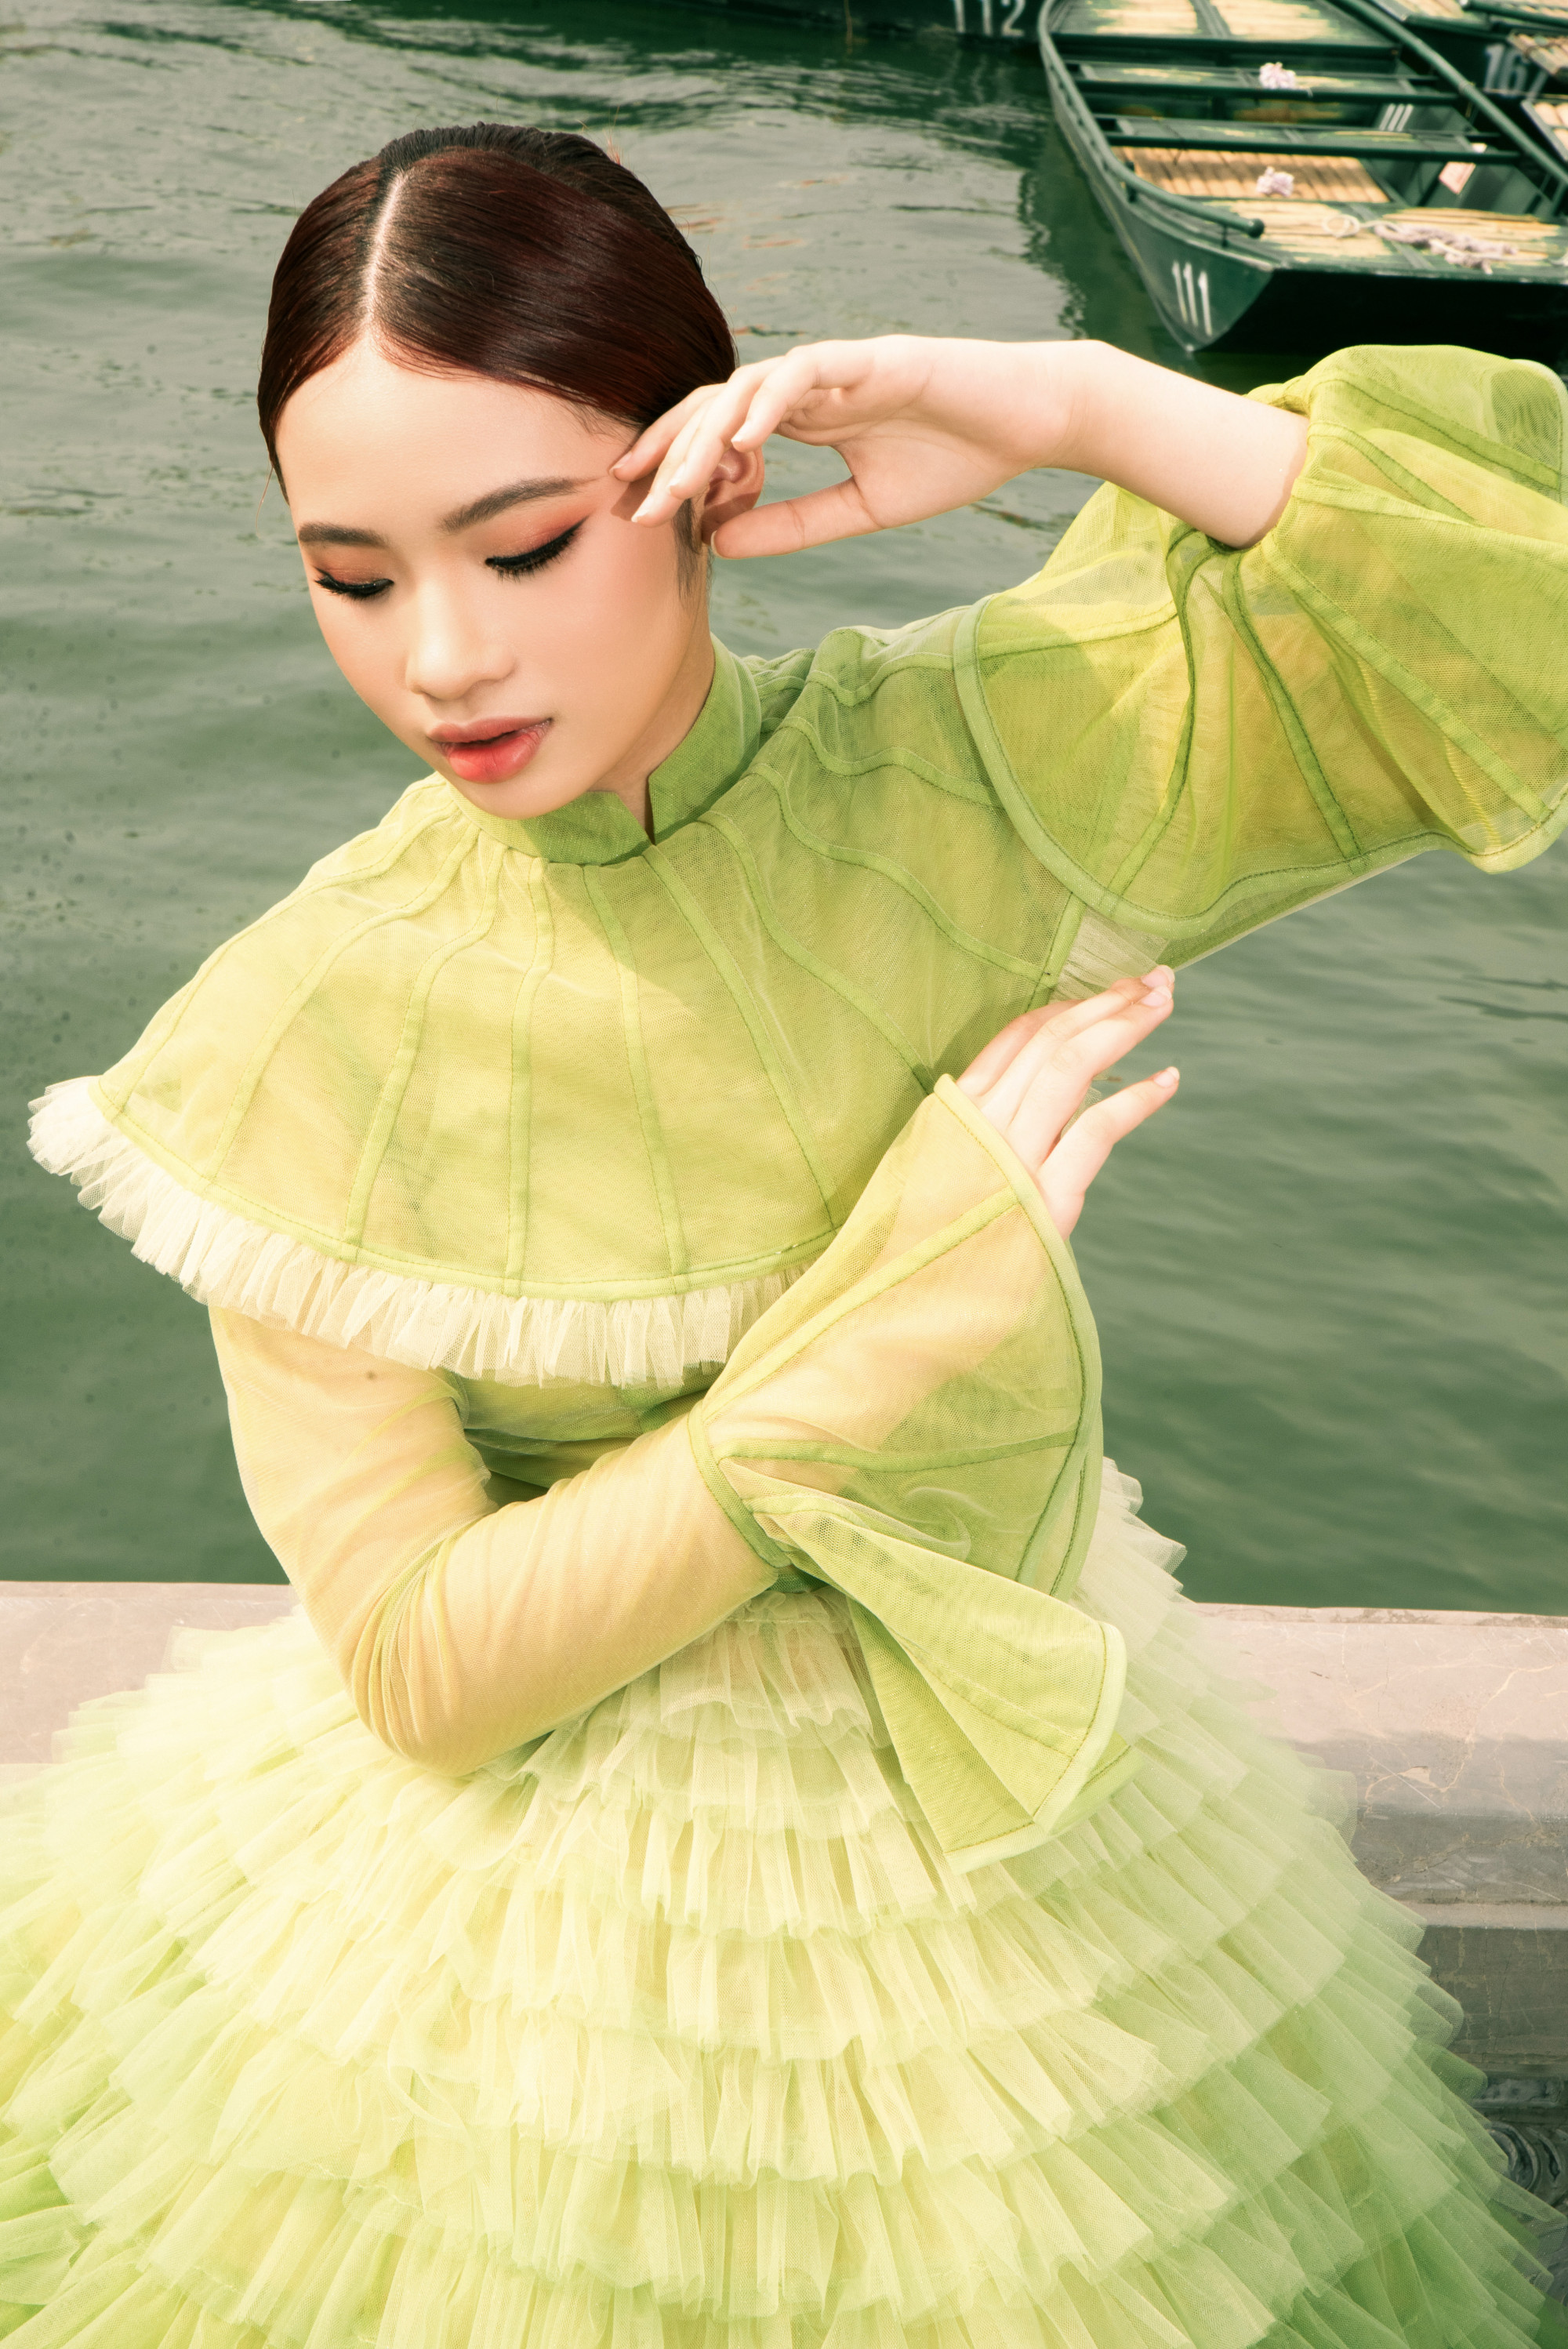 Mẫu nhí Bảo Hà tựa một nàng tiên sen với thần thái tươi tắn, rạng rỡ cùng những kiểu pose nhẹ nhàng, đơn giản nhưng lại đầy thu hút và phù hợp với khung cảnh nên thơ của Tam Chúc Hà Nam.